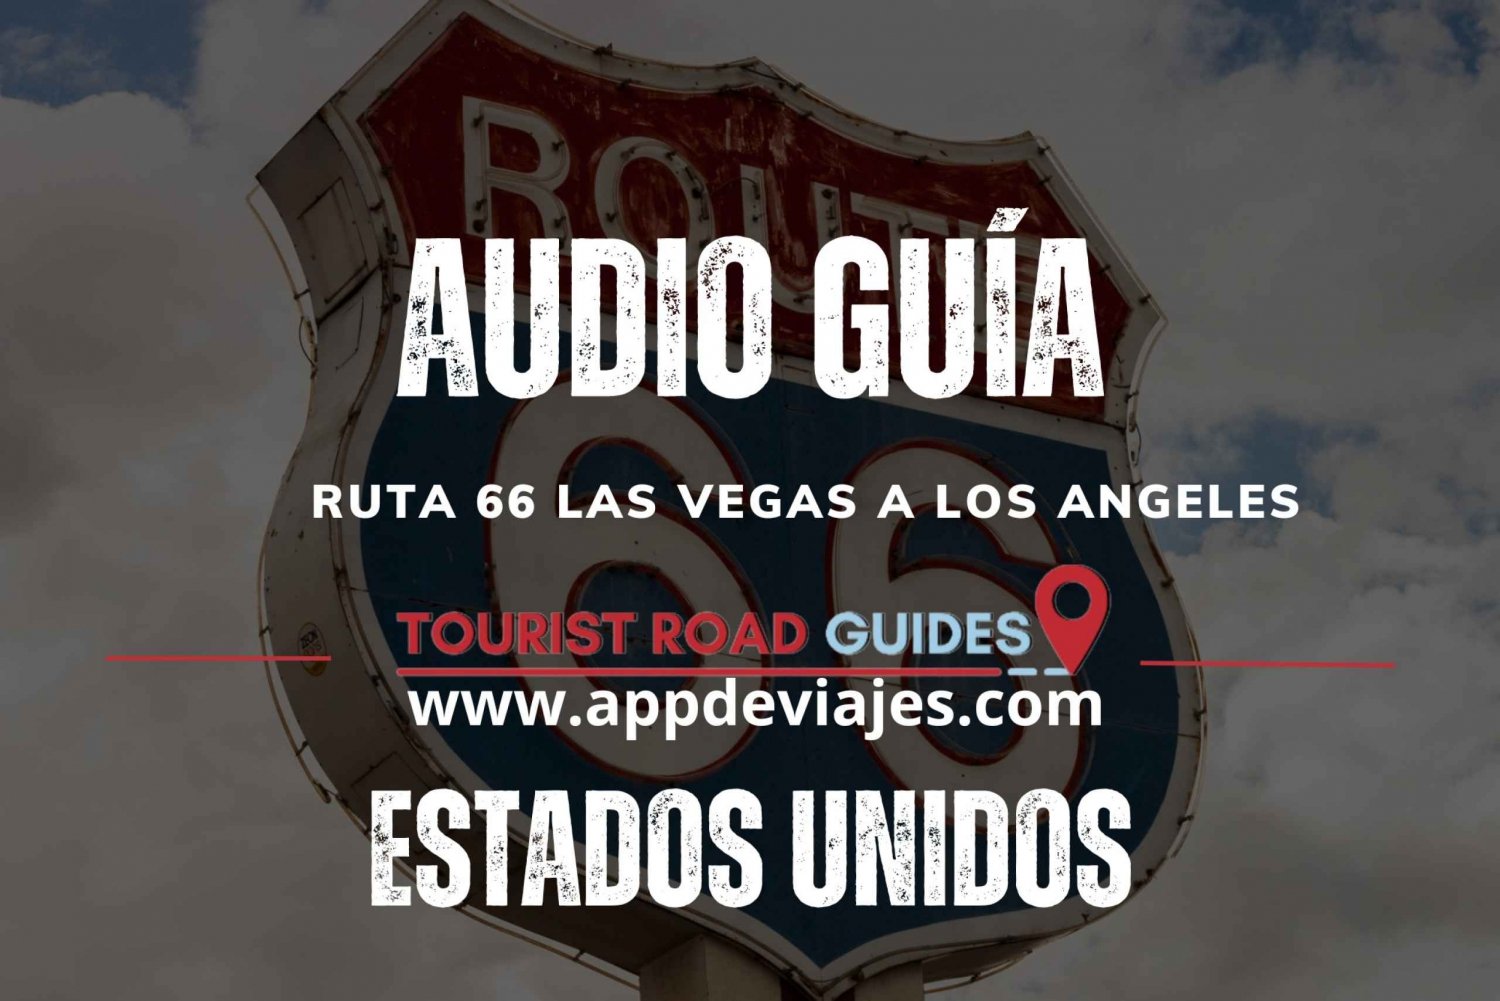 Route 66 Las Vegas - Los Angeles - application audioguide